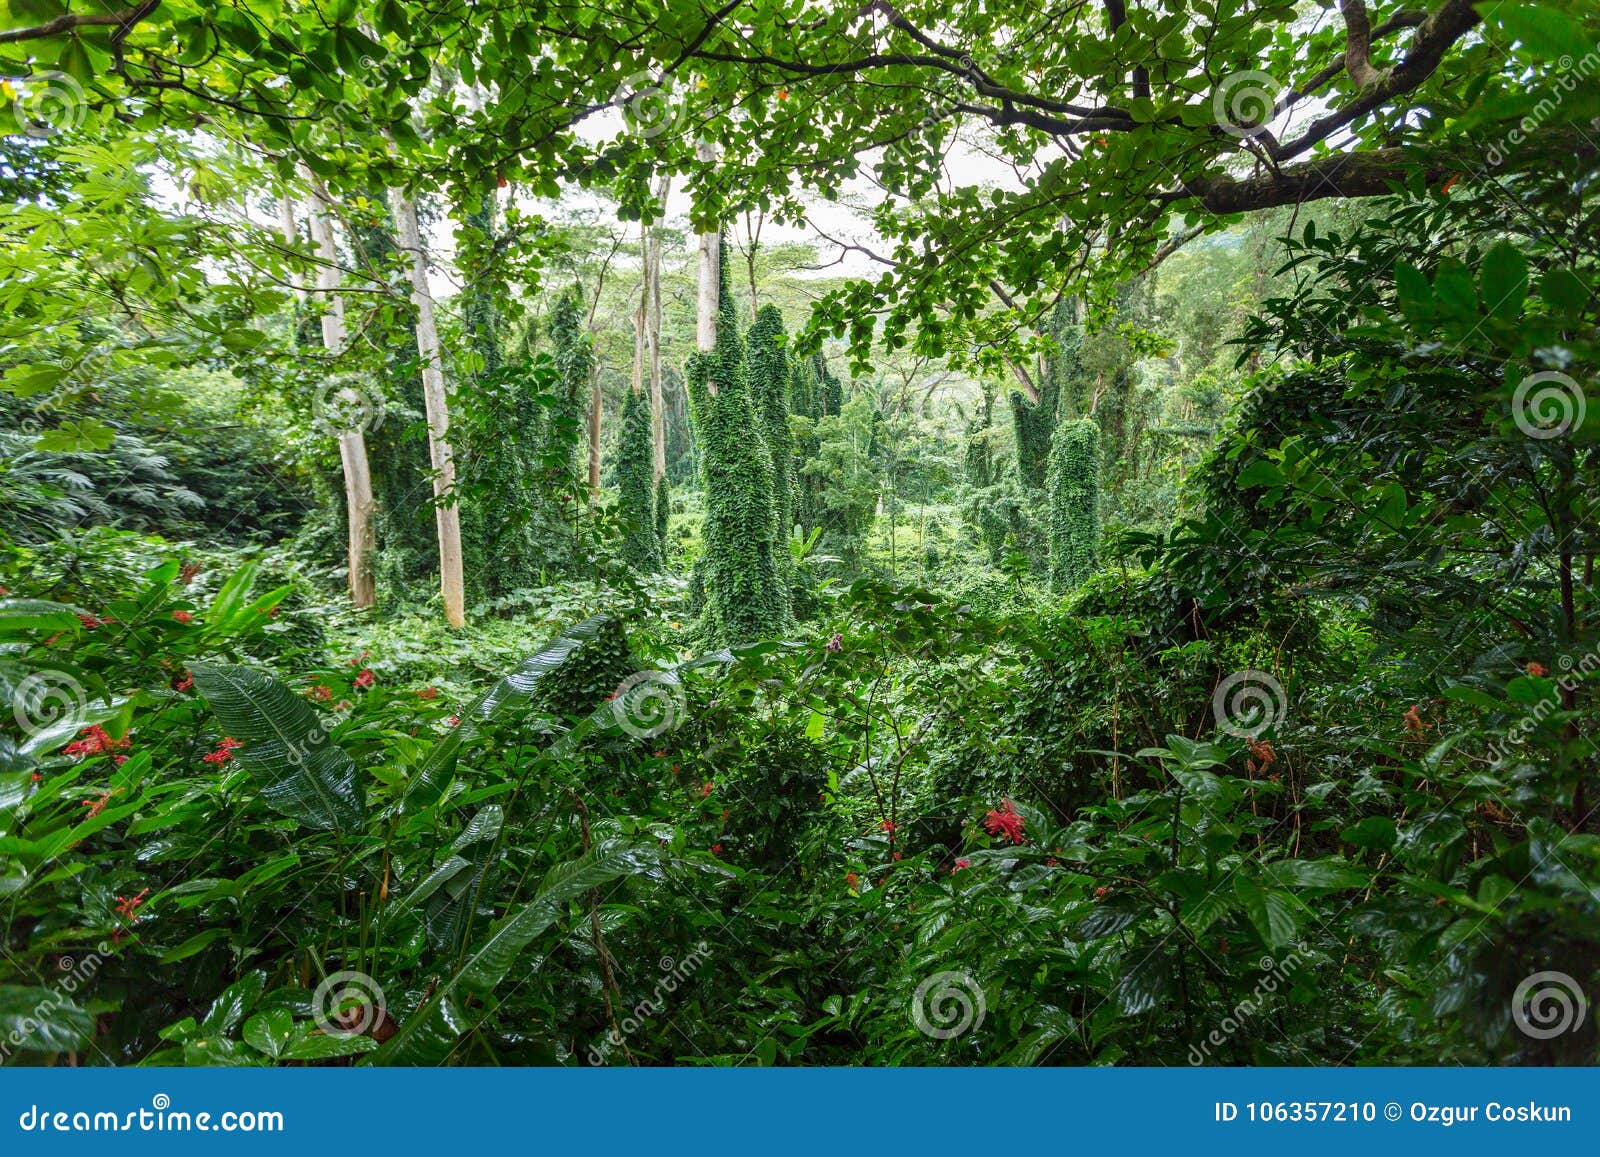 dense verdant green tropical rainforest vegetation